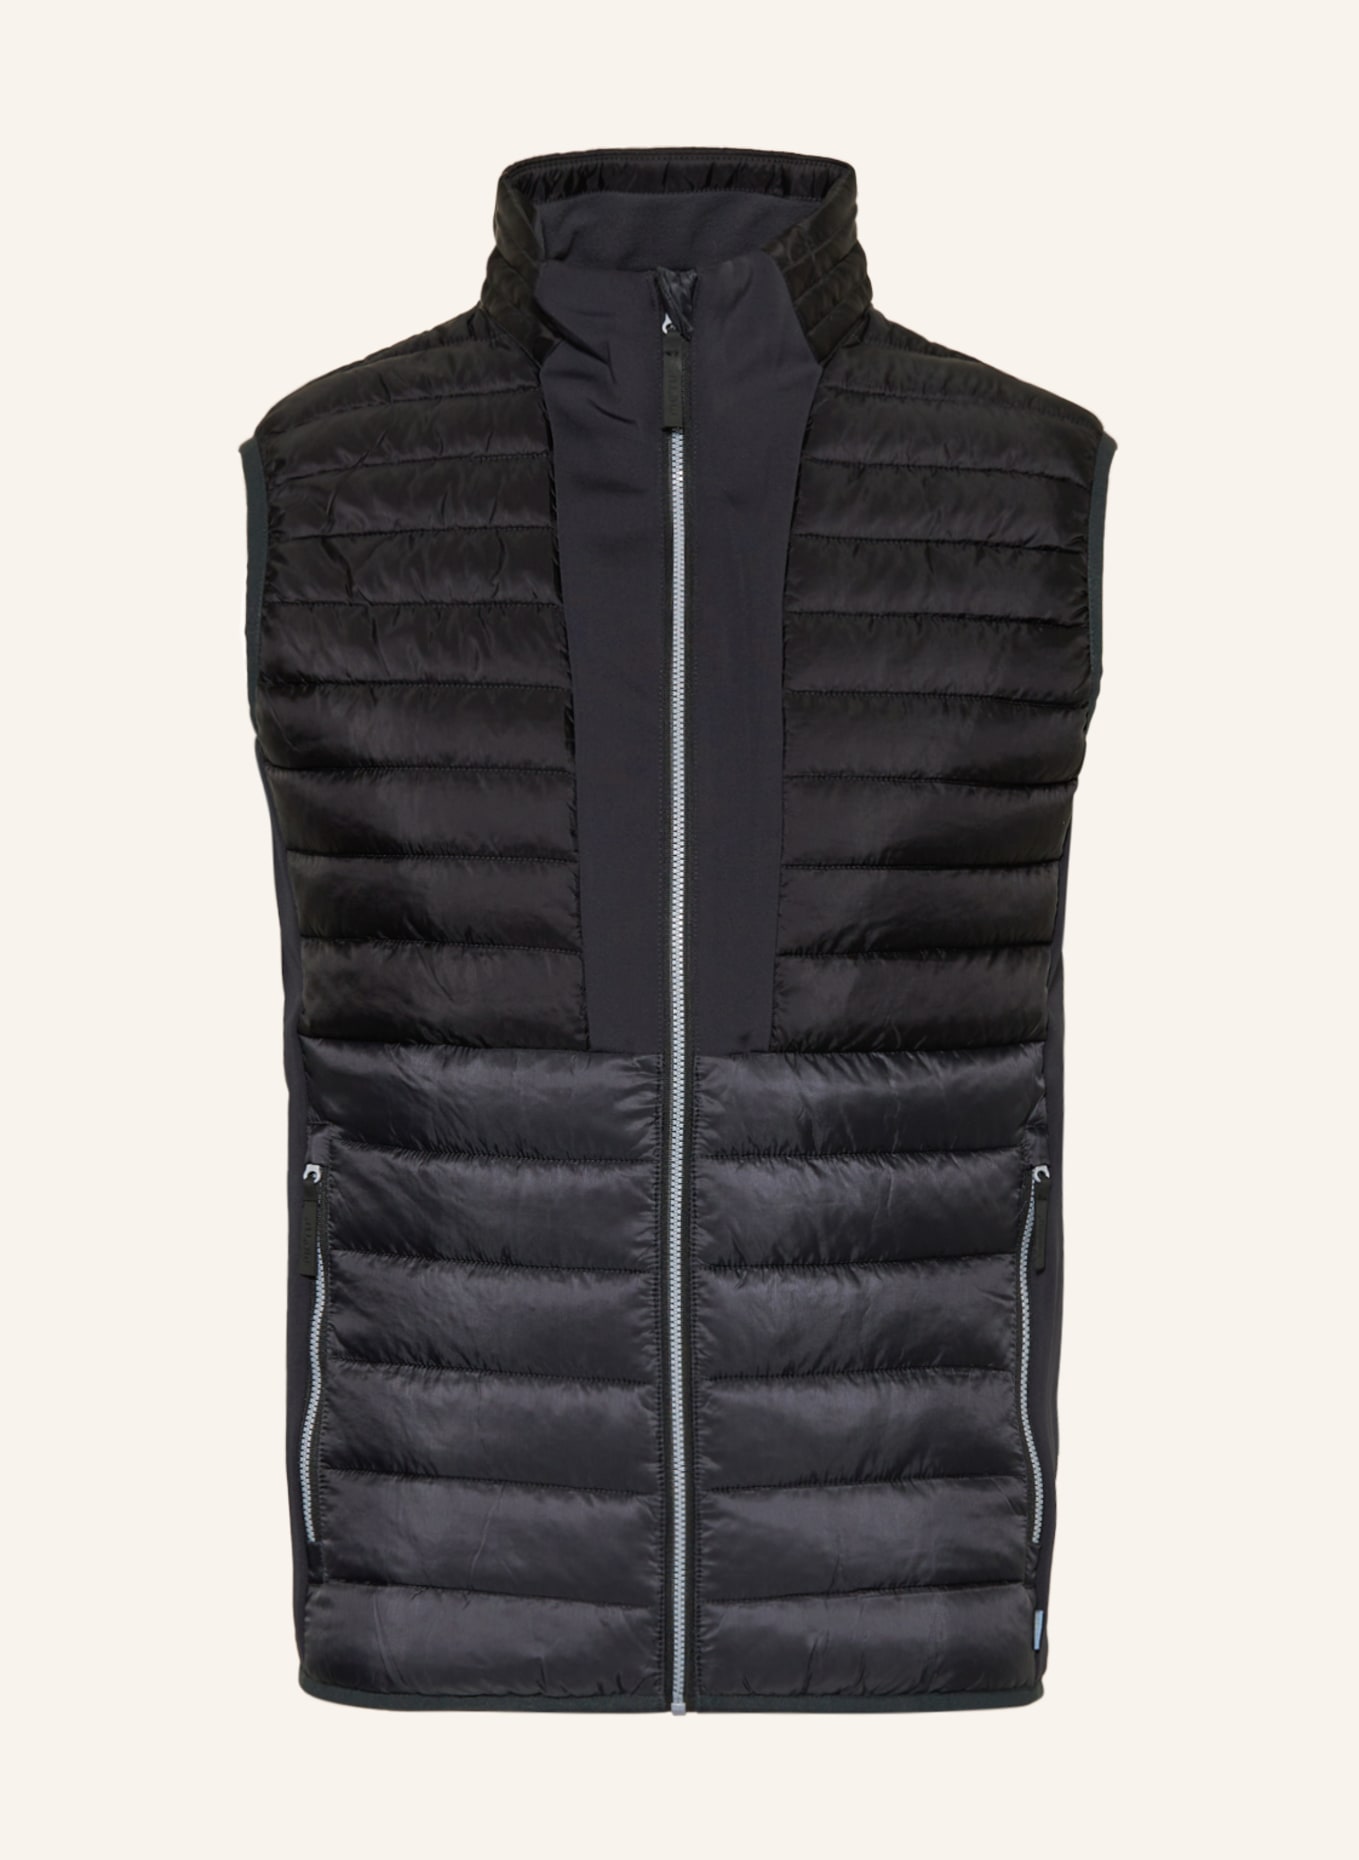 me°ru' Hybrid quilted vest SWANSEA, Color: BLACK (Image 1)